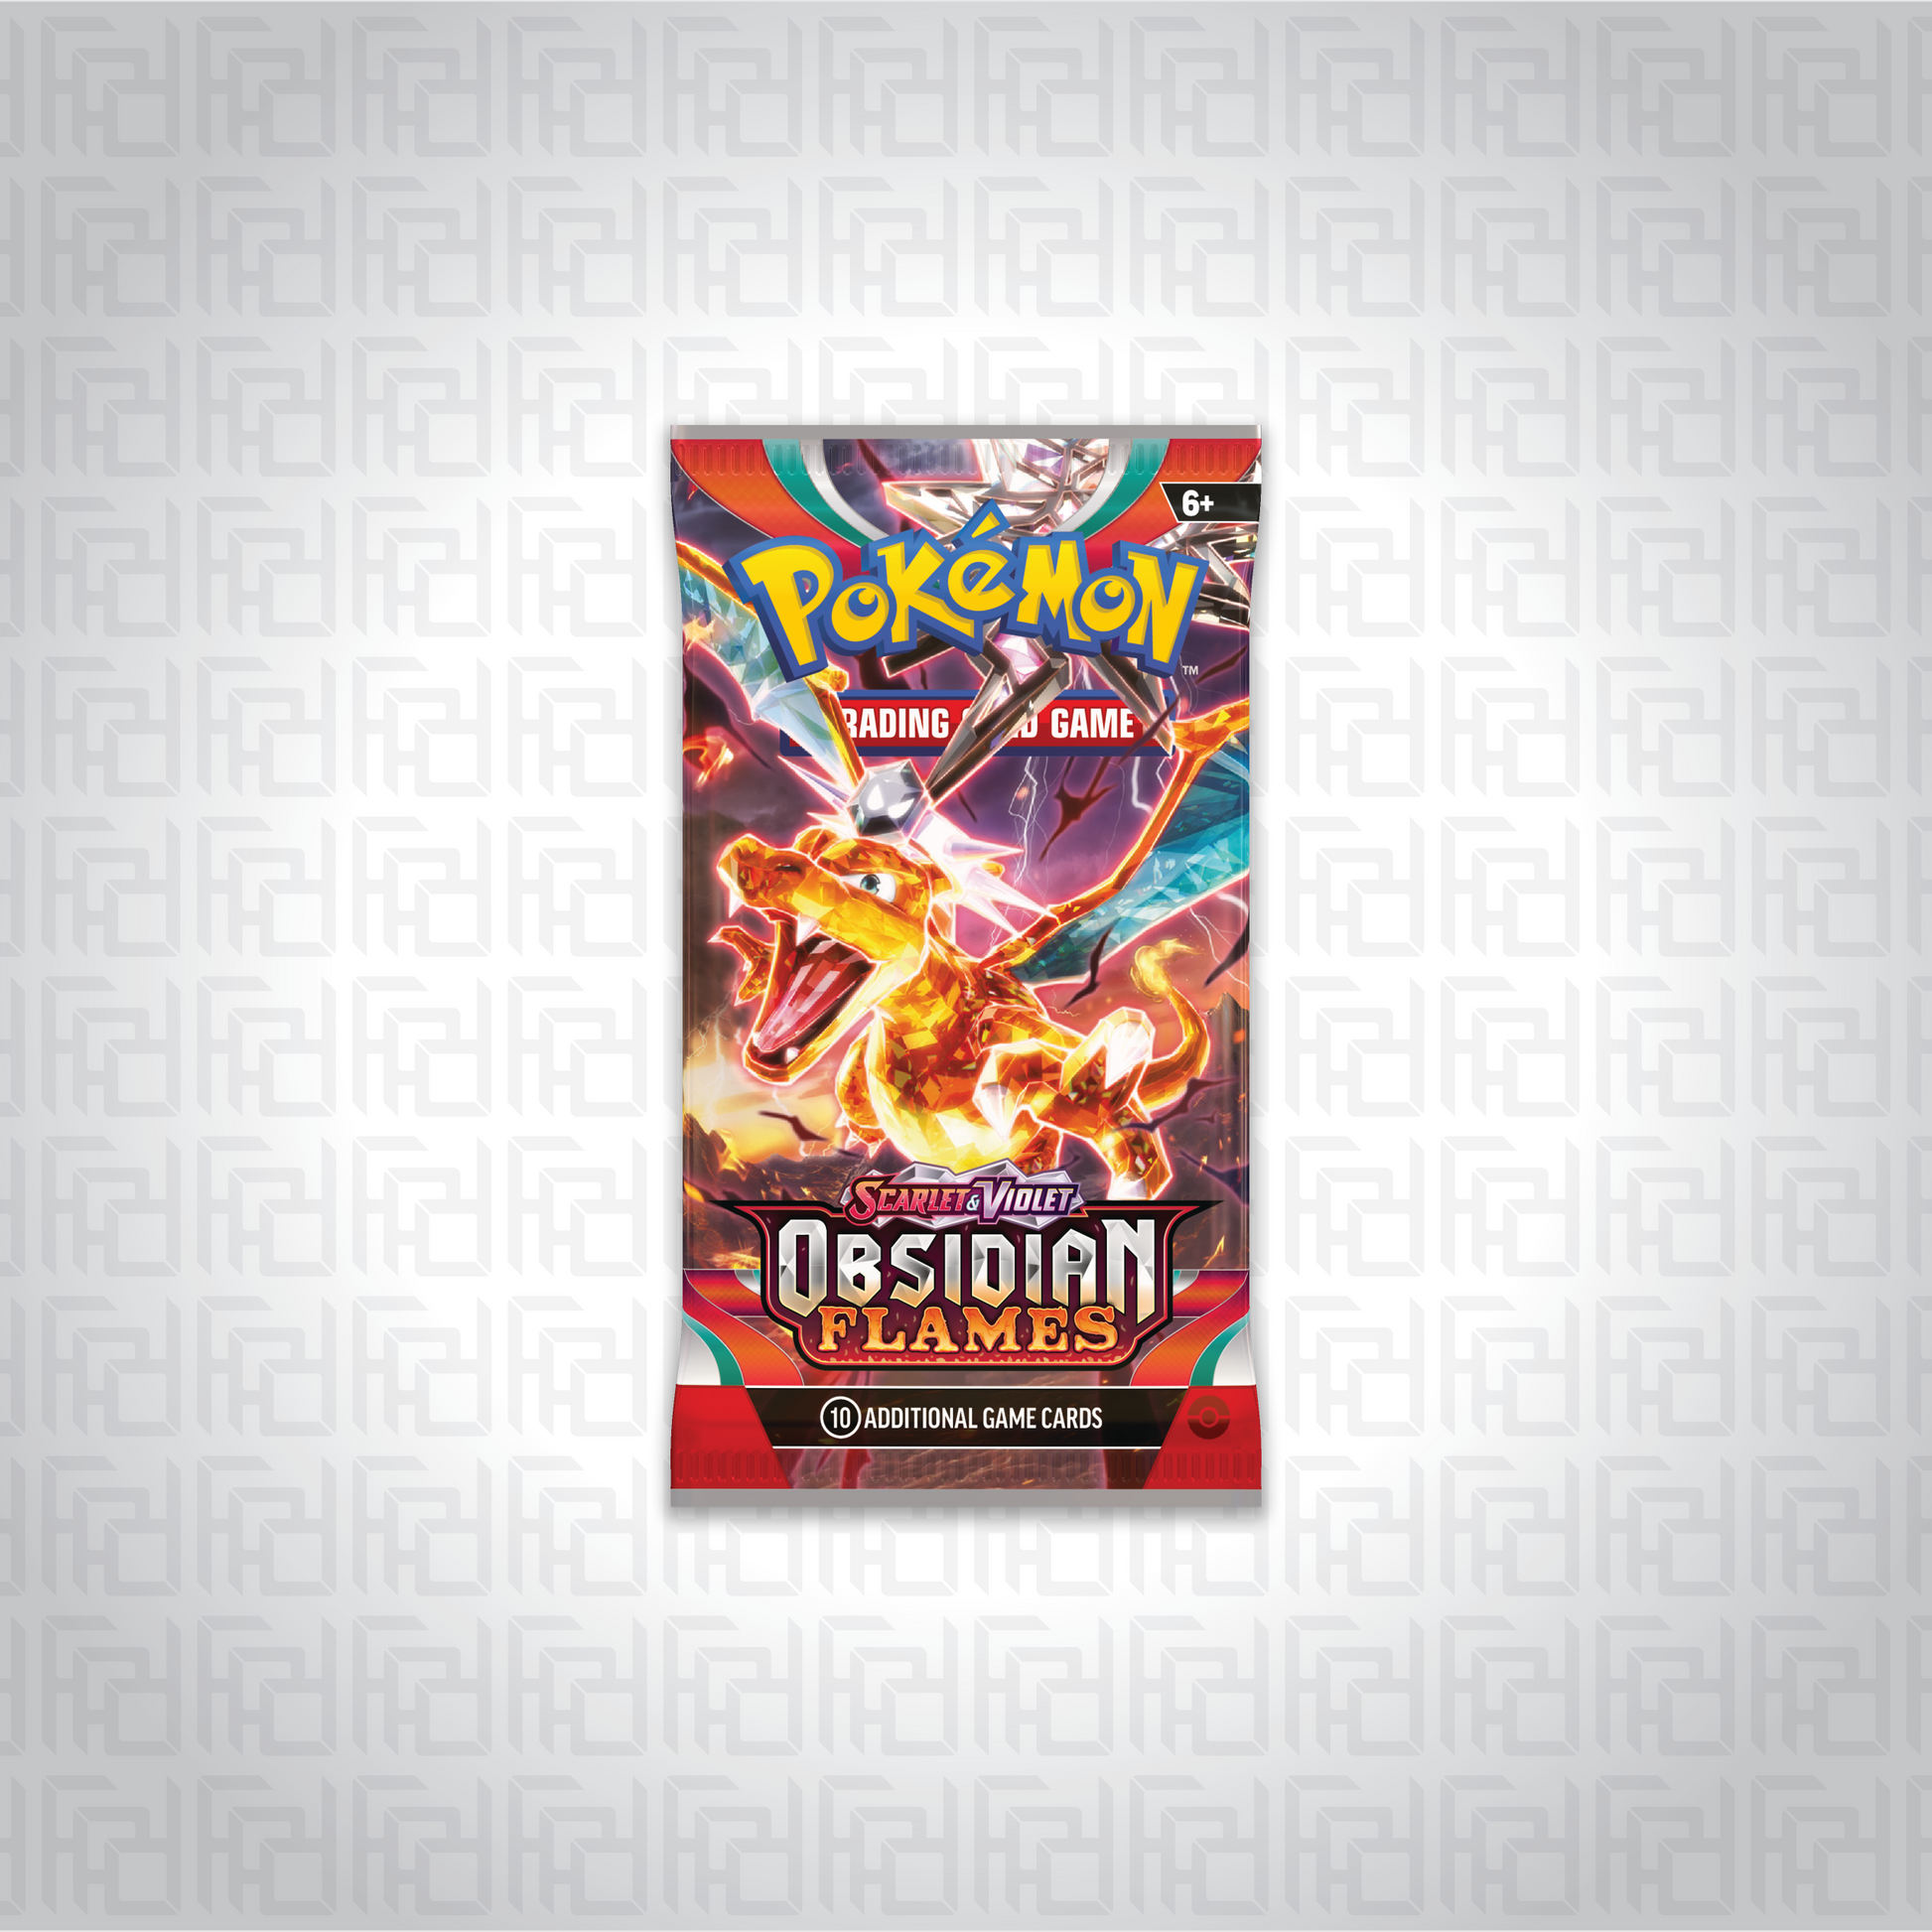 Pokemon TCG: Scarlet & Violet—Obsidian Flames booster pack.